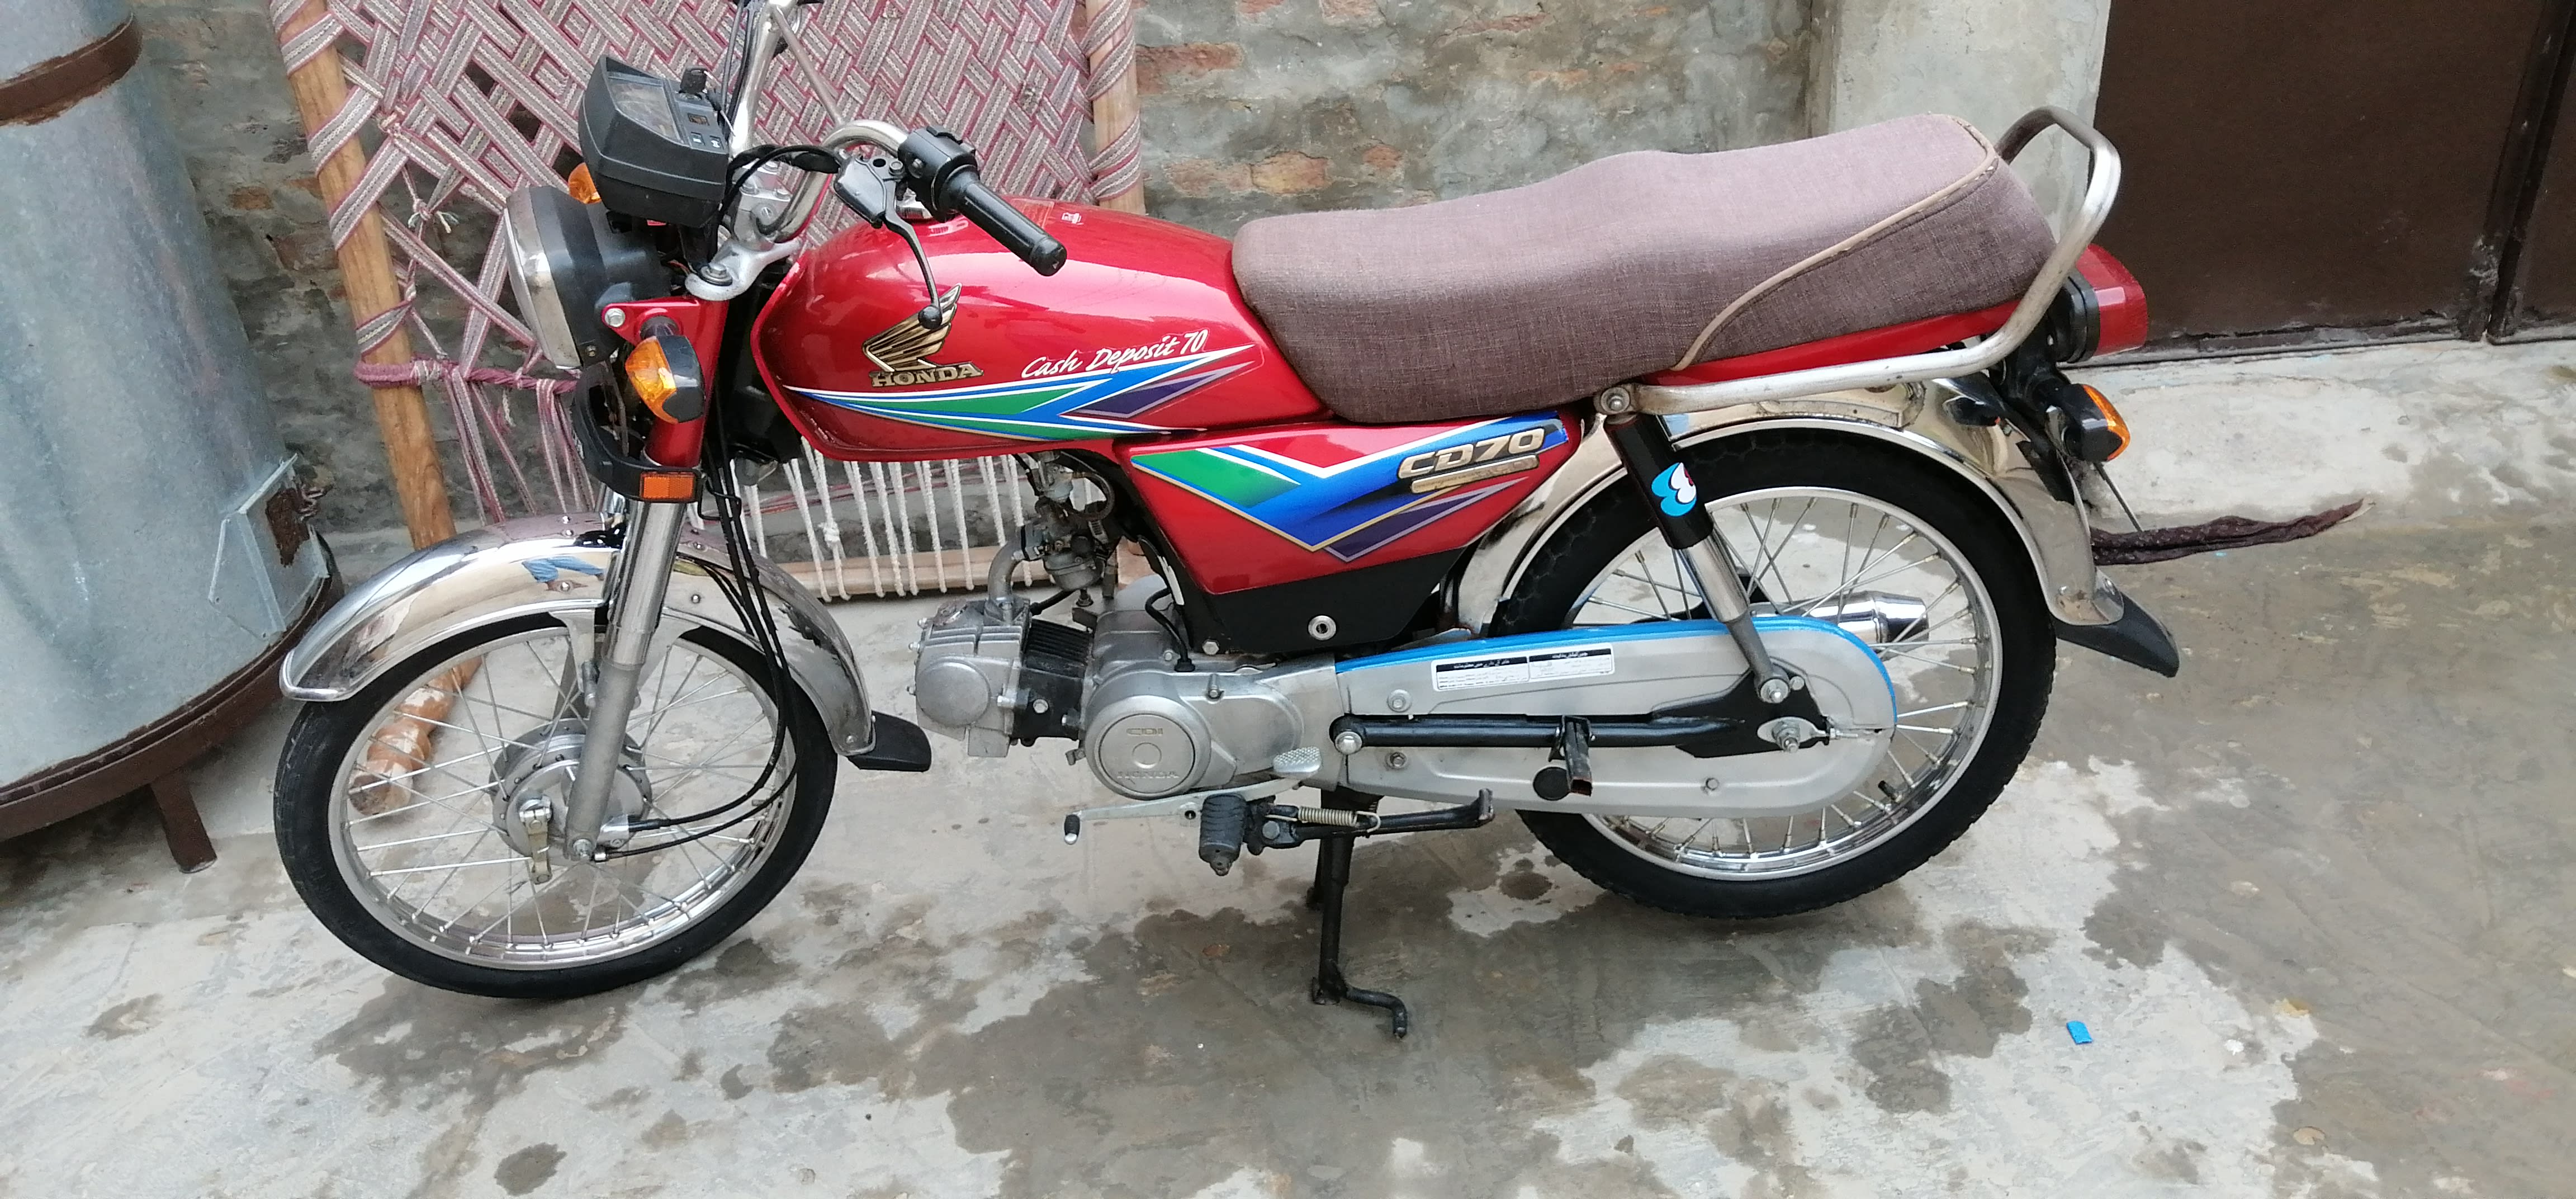 Honda Bike  70cc  for sale in Khan Bela ebike pk